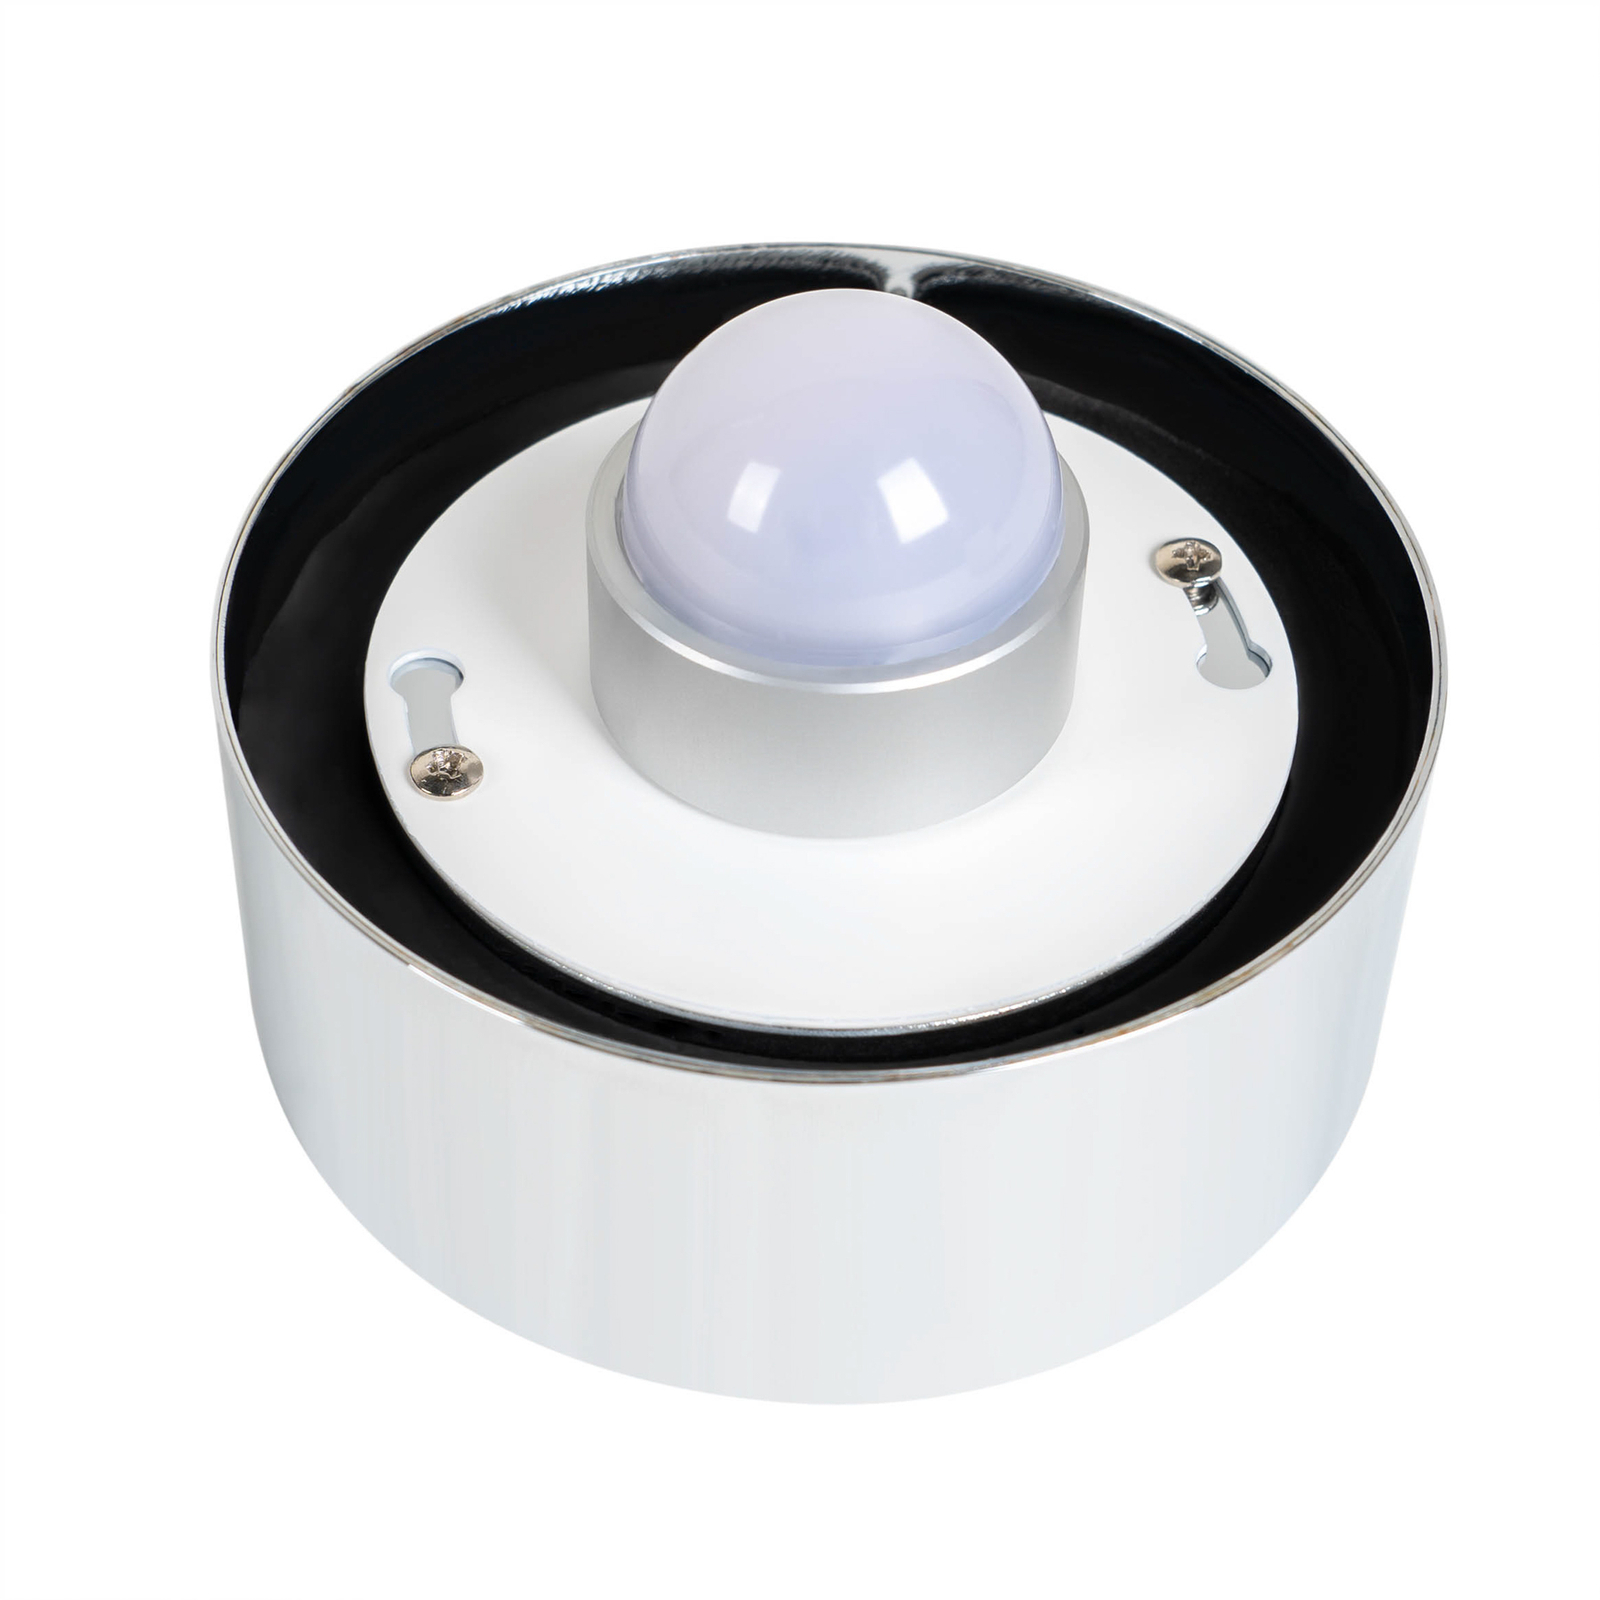 Arcchio Timaris LED-Bad-Deckenlampe, chrom, IP44